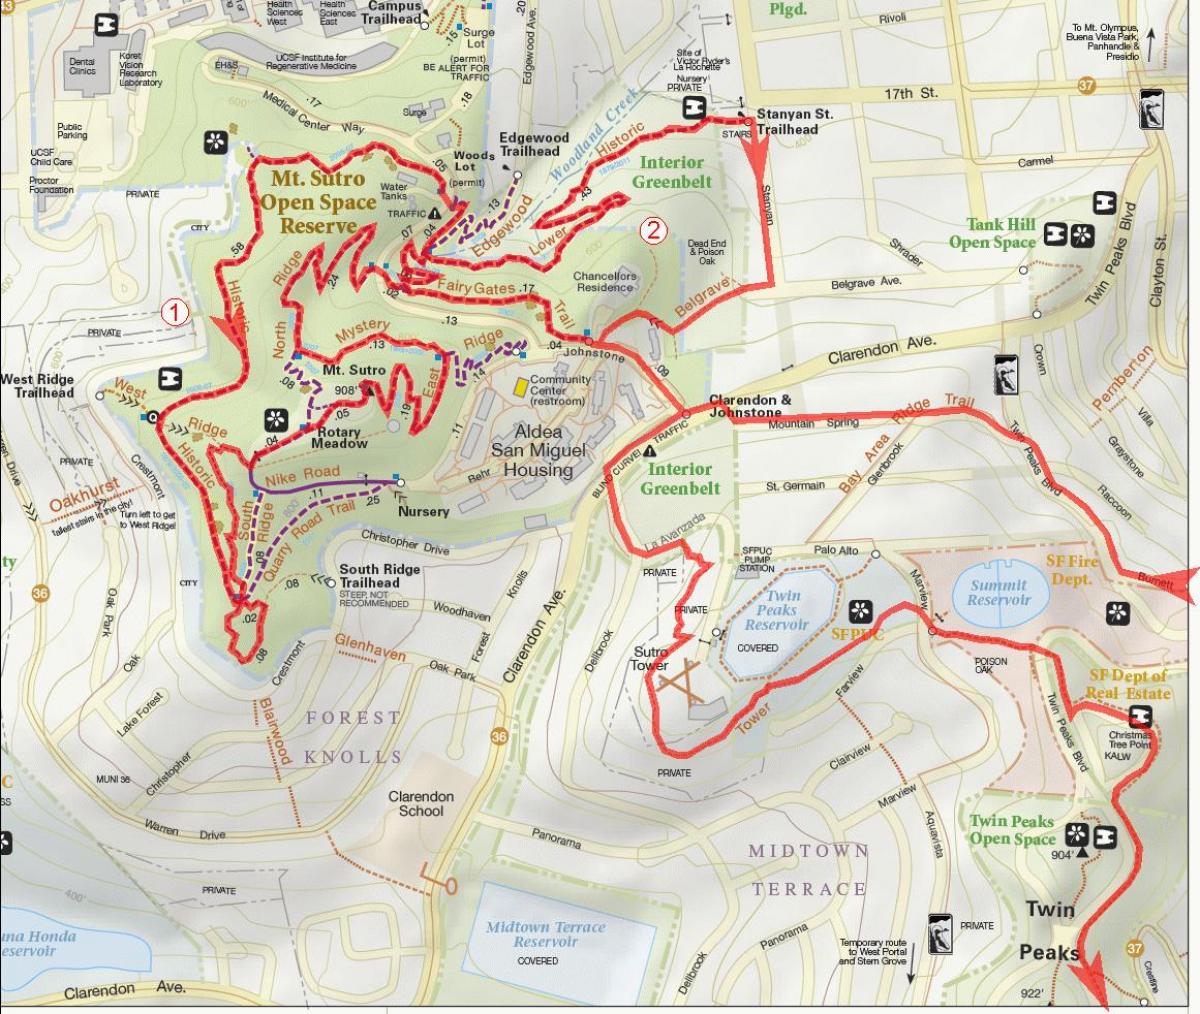 Peta dari bay area jalur sepeda